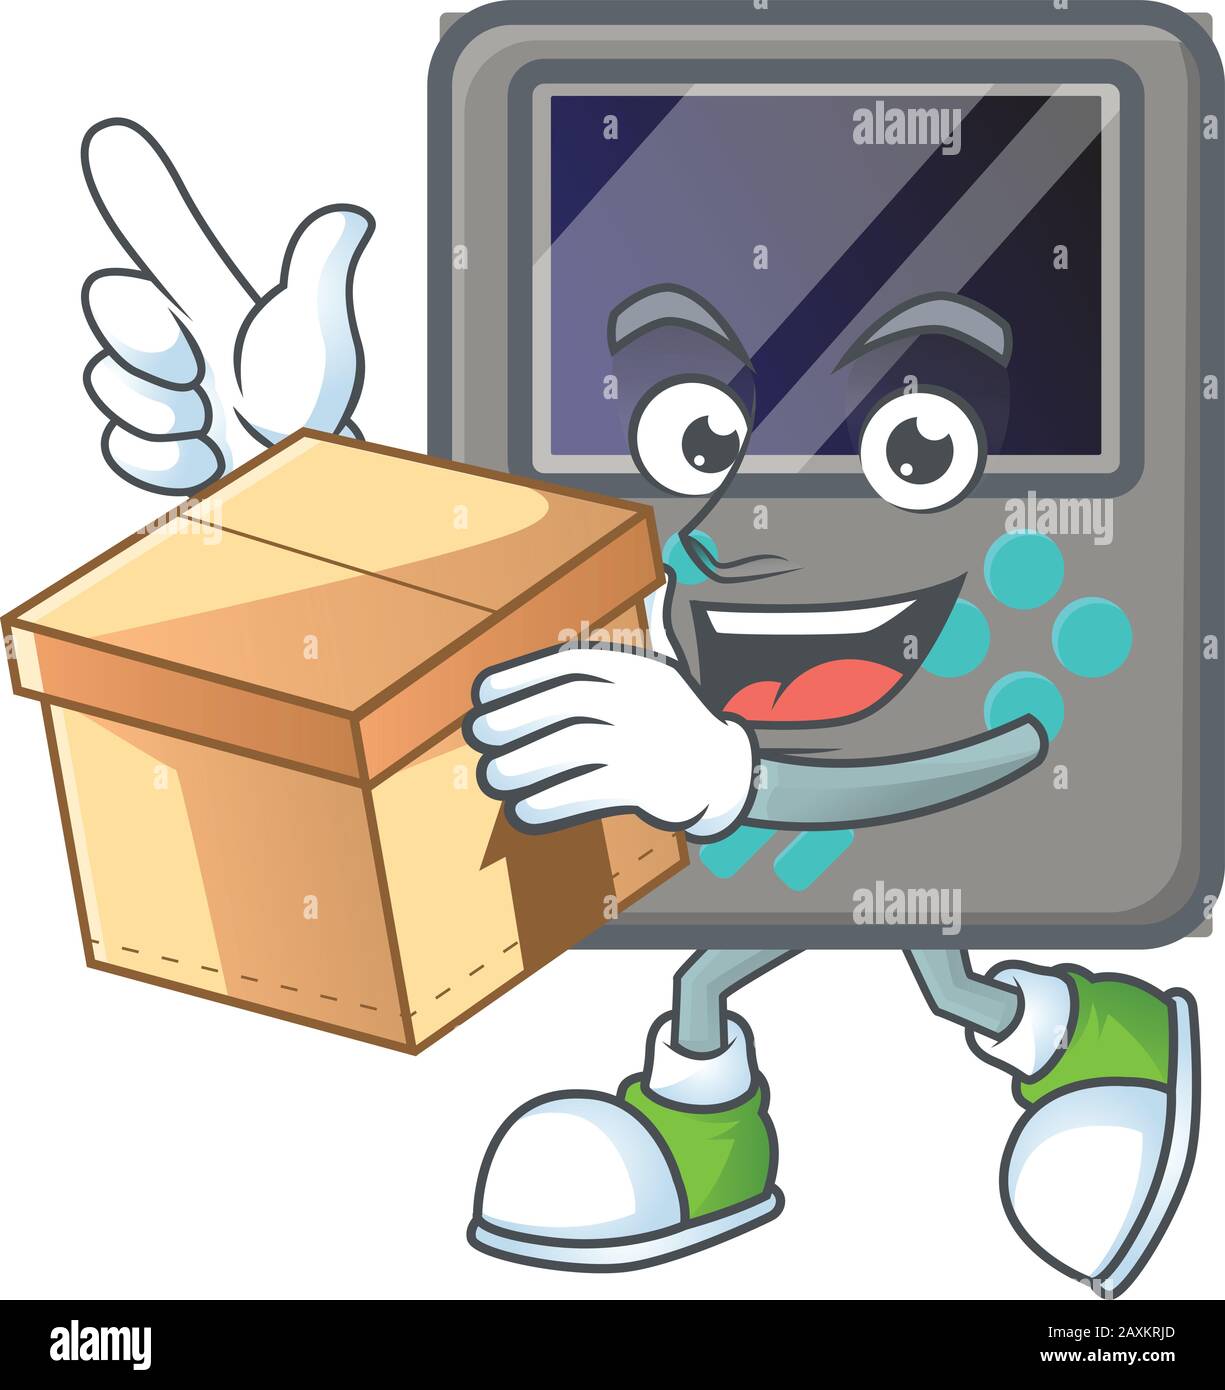 Une charmante console de jeux de style mascotte avec une boîte Illustration de Vecteur